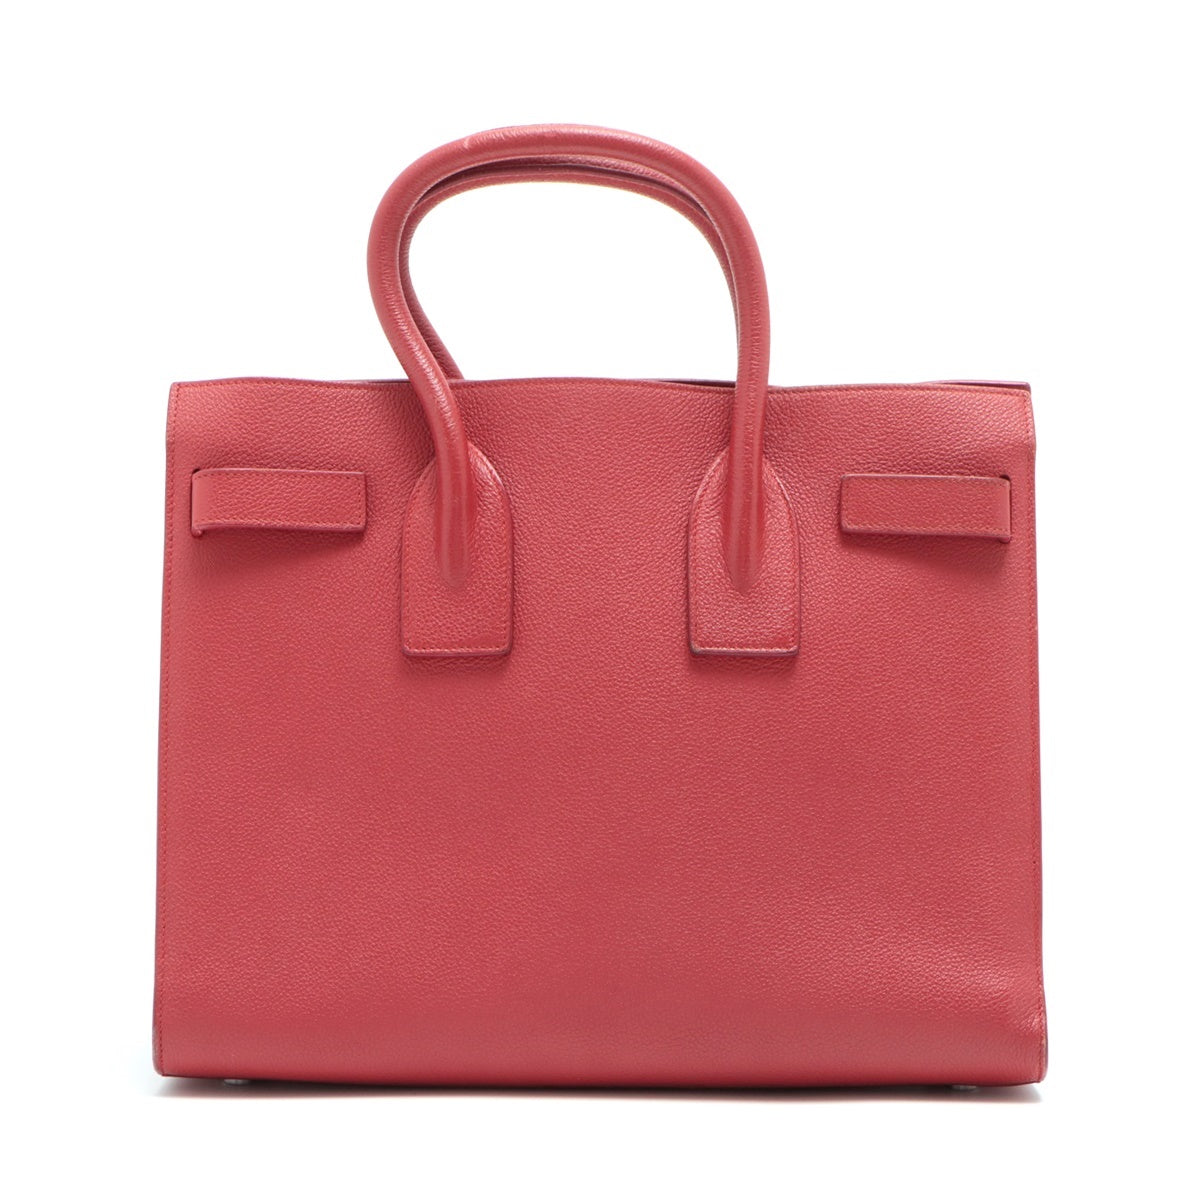 Saint Laurent Paris Sac de Jour Leather 2way handbag Red 378299